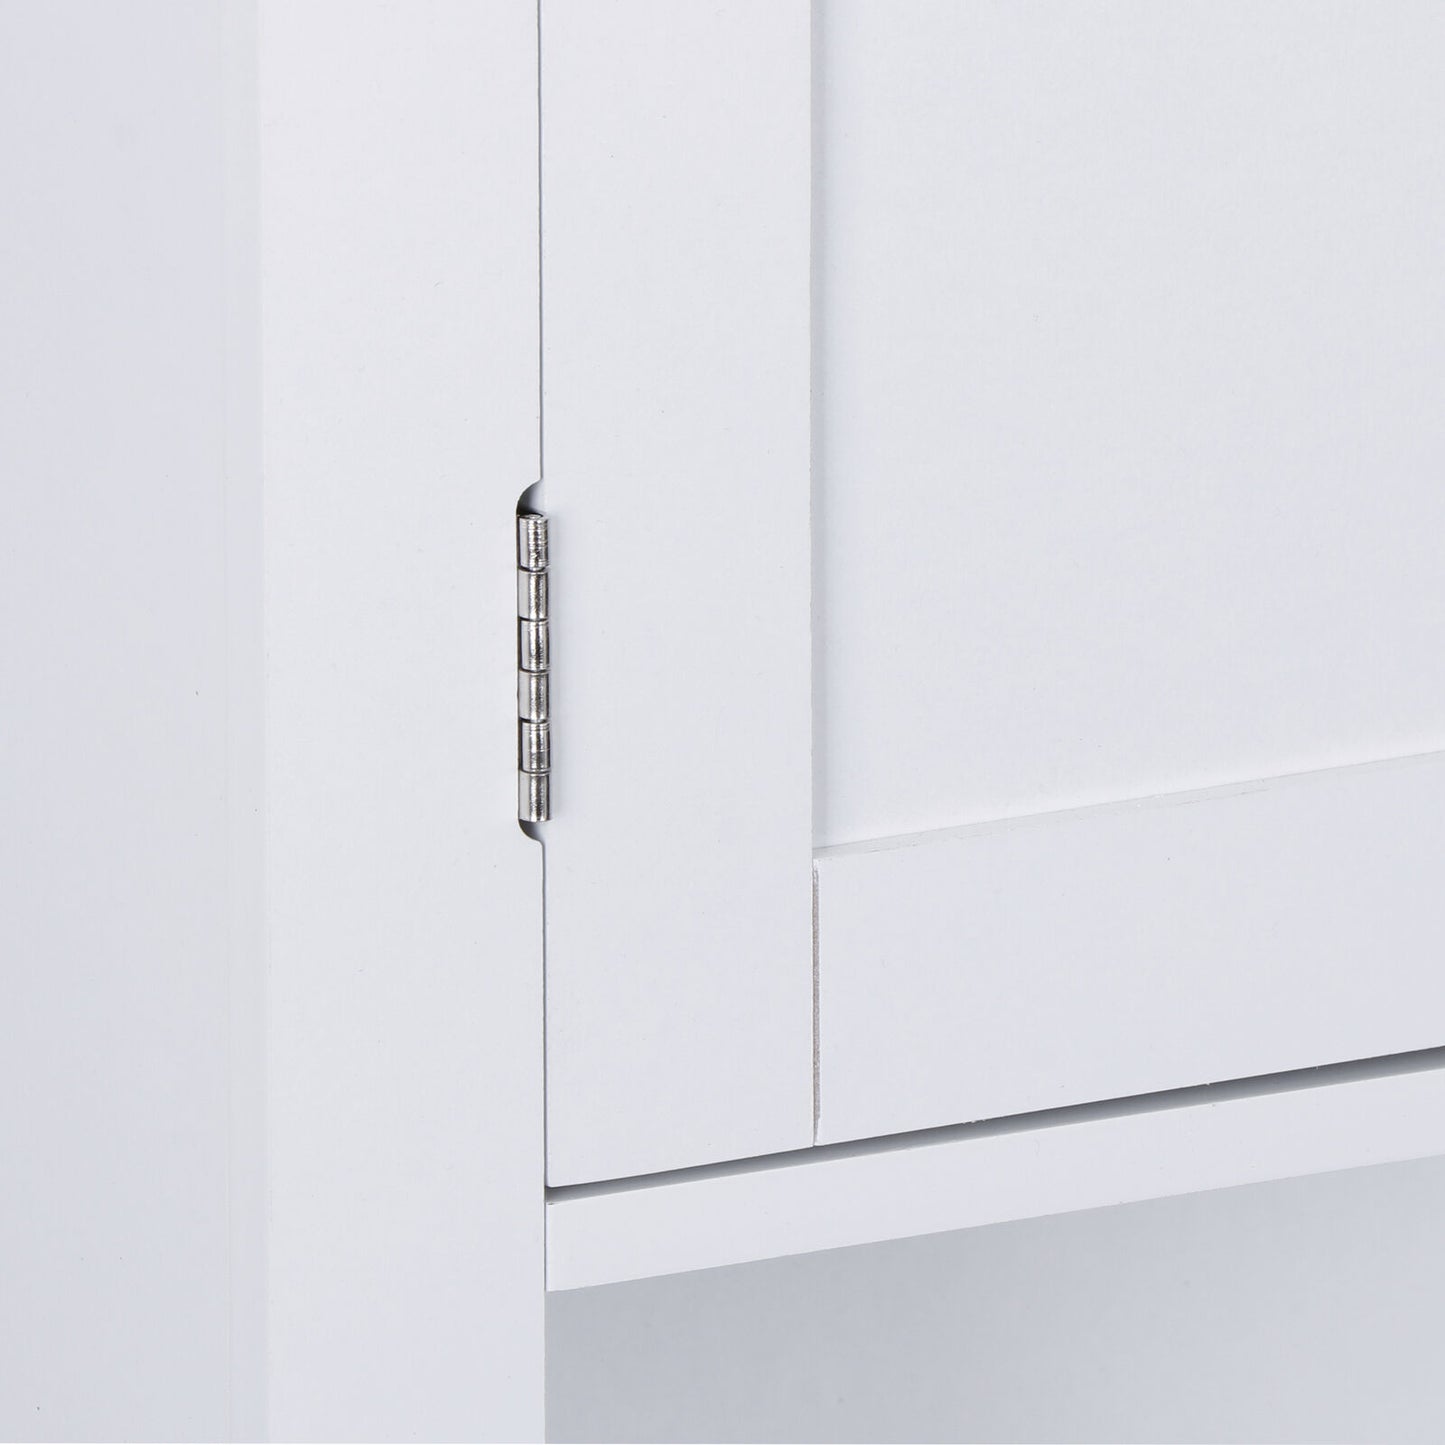 Bathroom Kitchen Cabinet Free Standing Cupboard Storage Organizer Shelf Decor